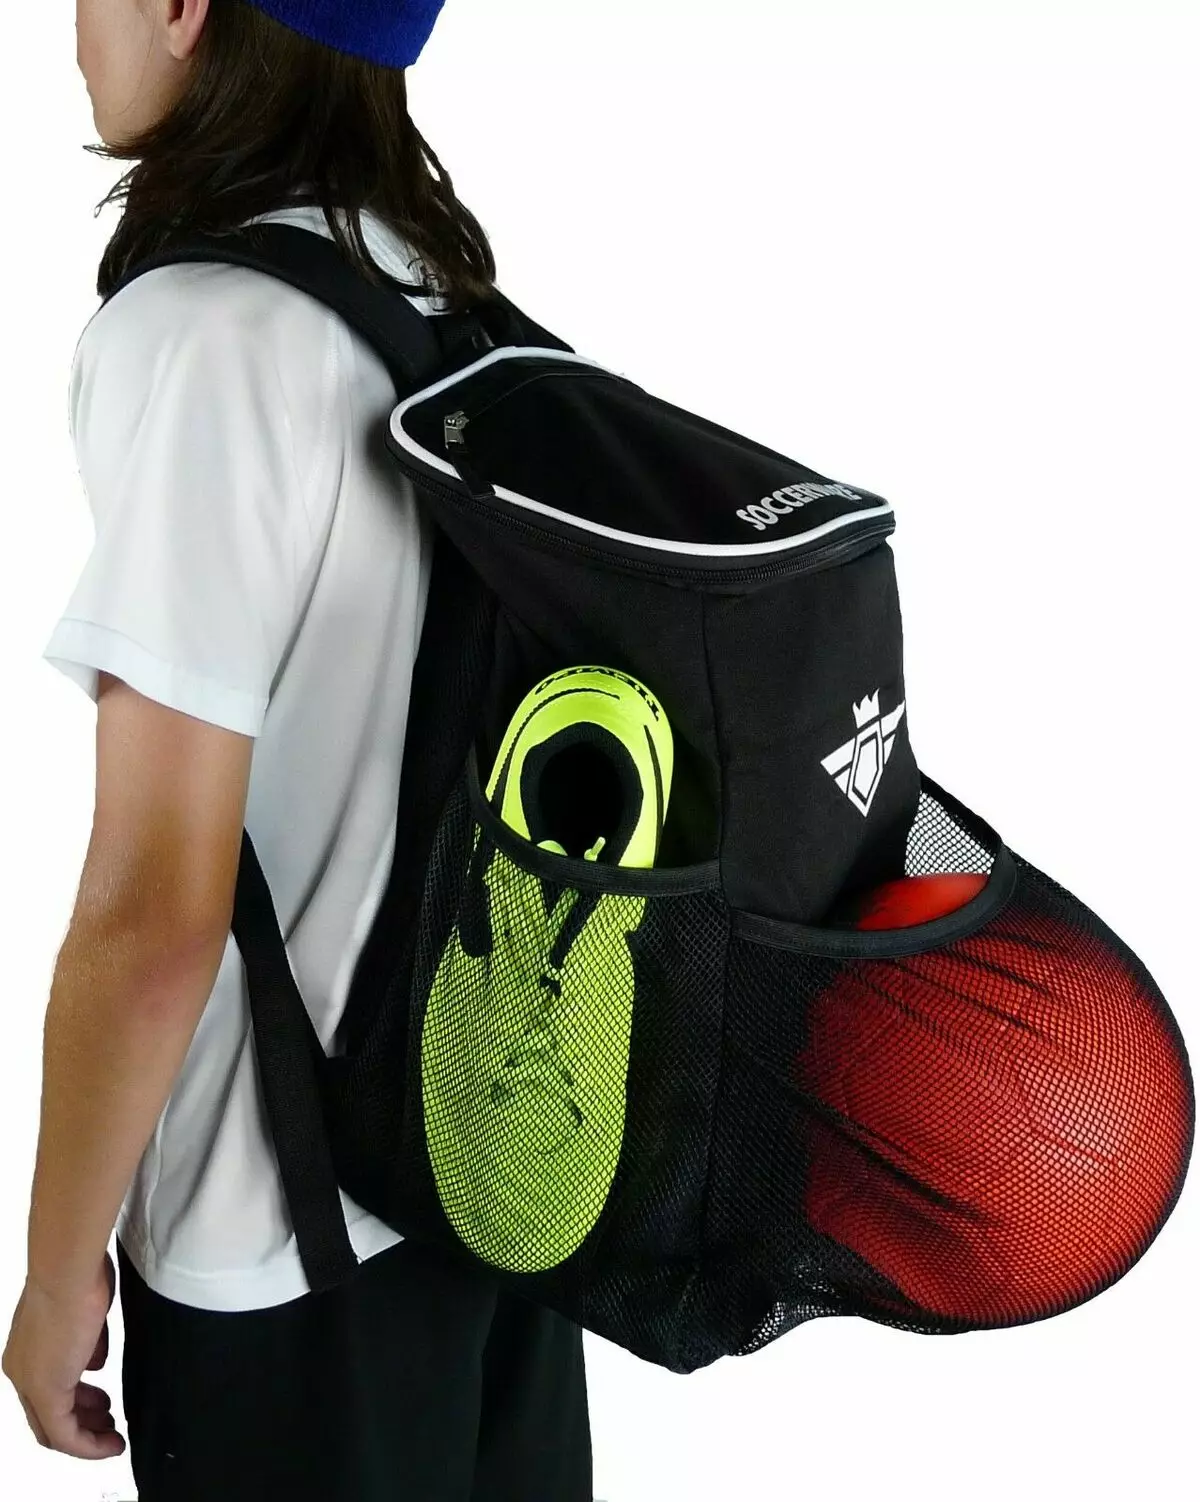 Mochilas esportivas: fêmeas e homens, pequenas e grandes mochilas para esportes, os melhores modelos de forma e com um compartimento de sapato 15338_23